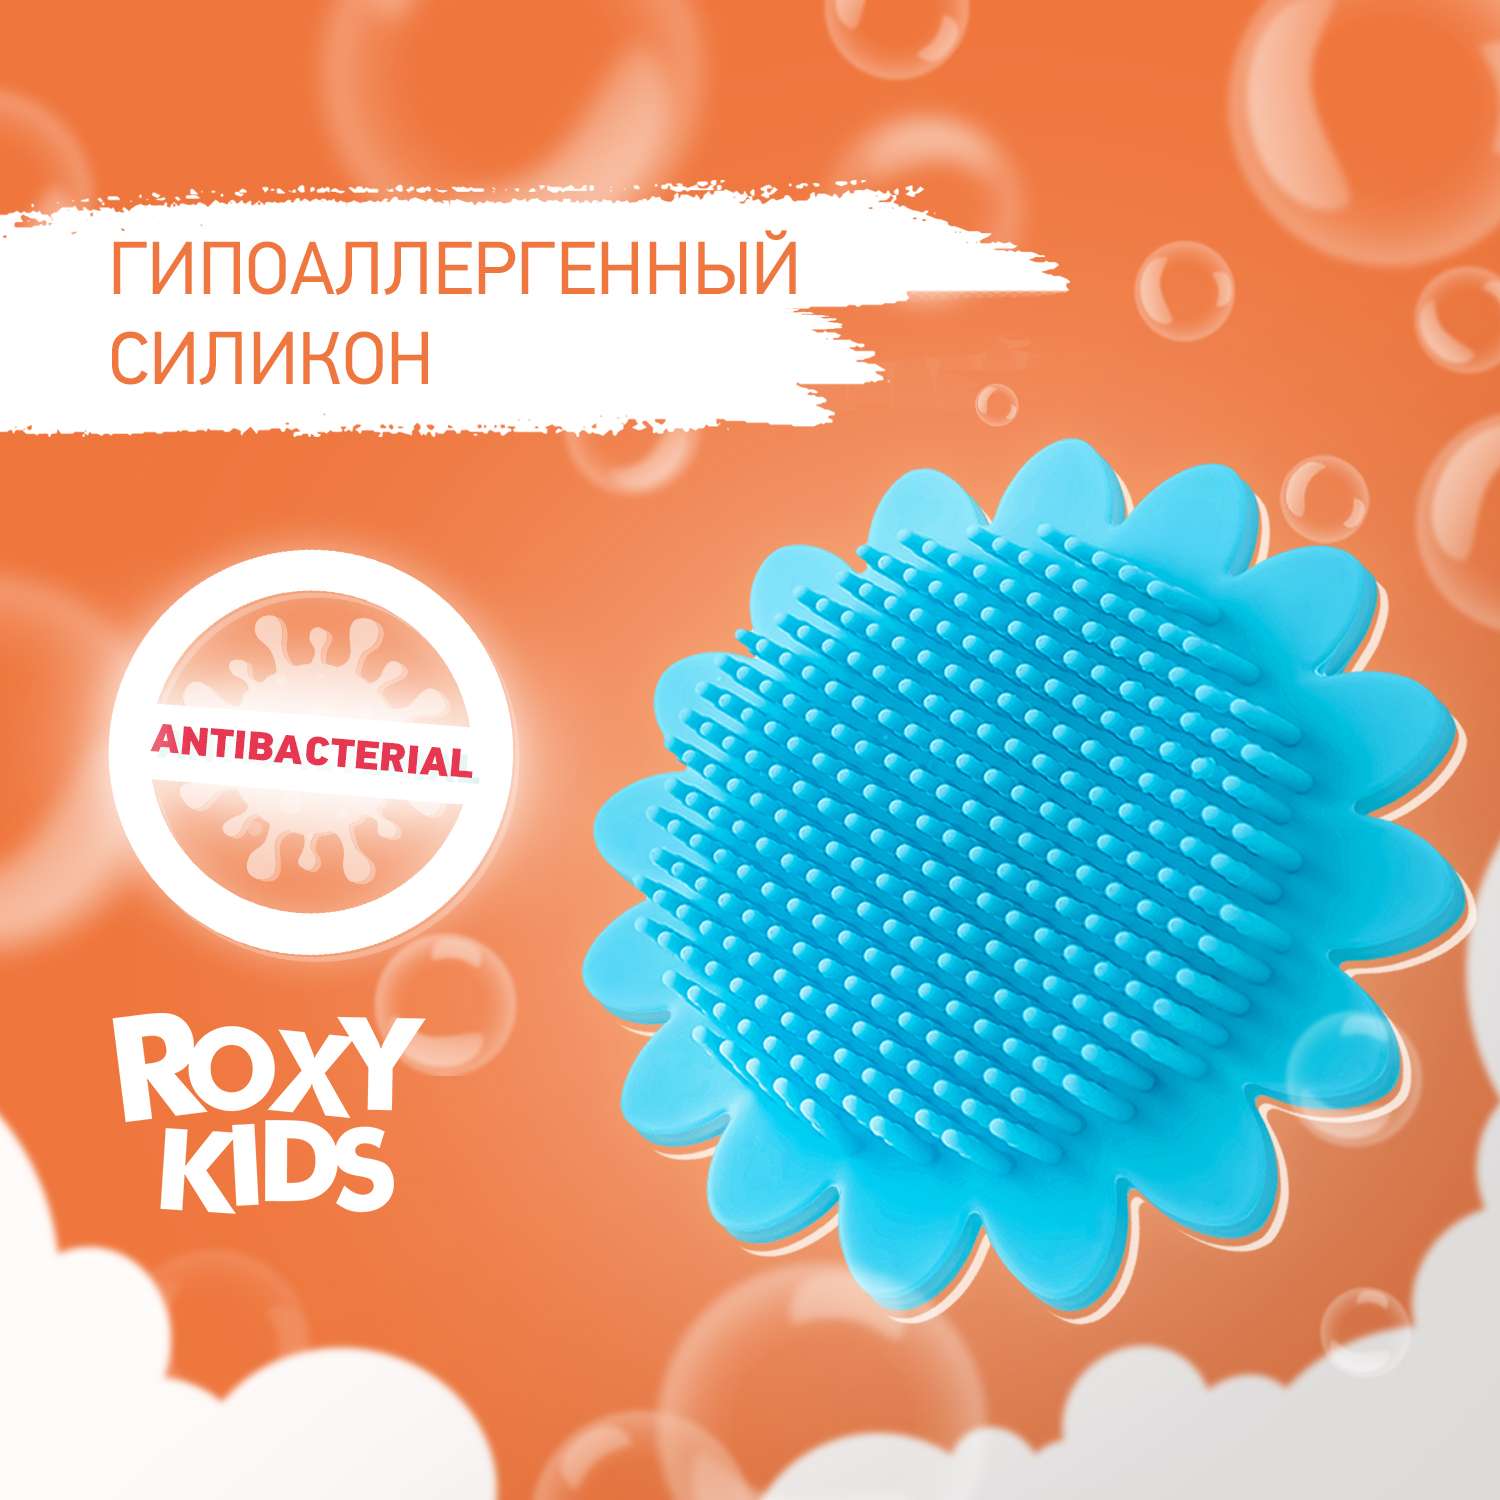 Губка антибактериальная ROXY-KIDS для купания подсолнух цвет голубой - фото 1